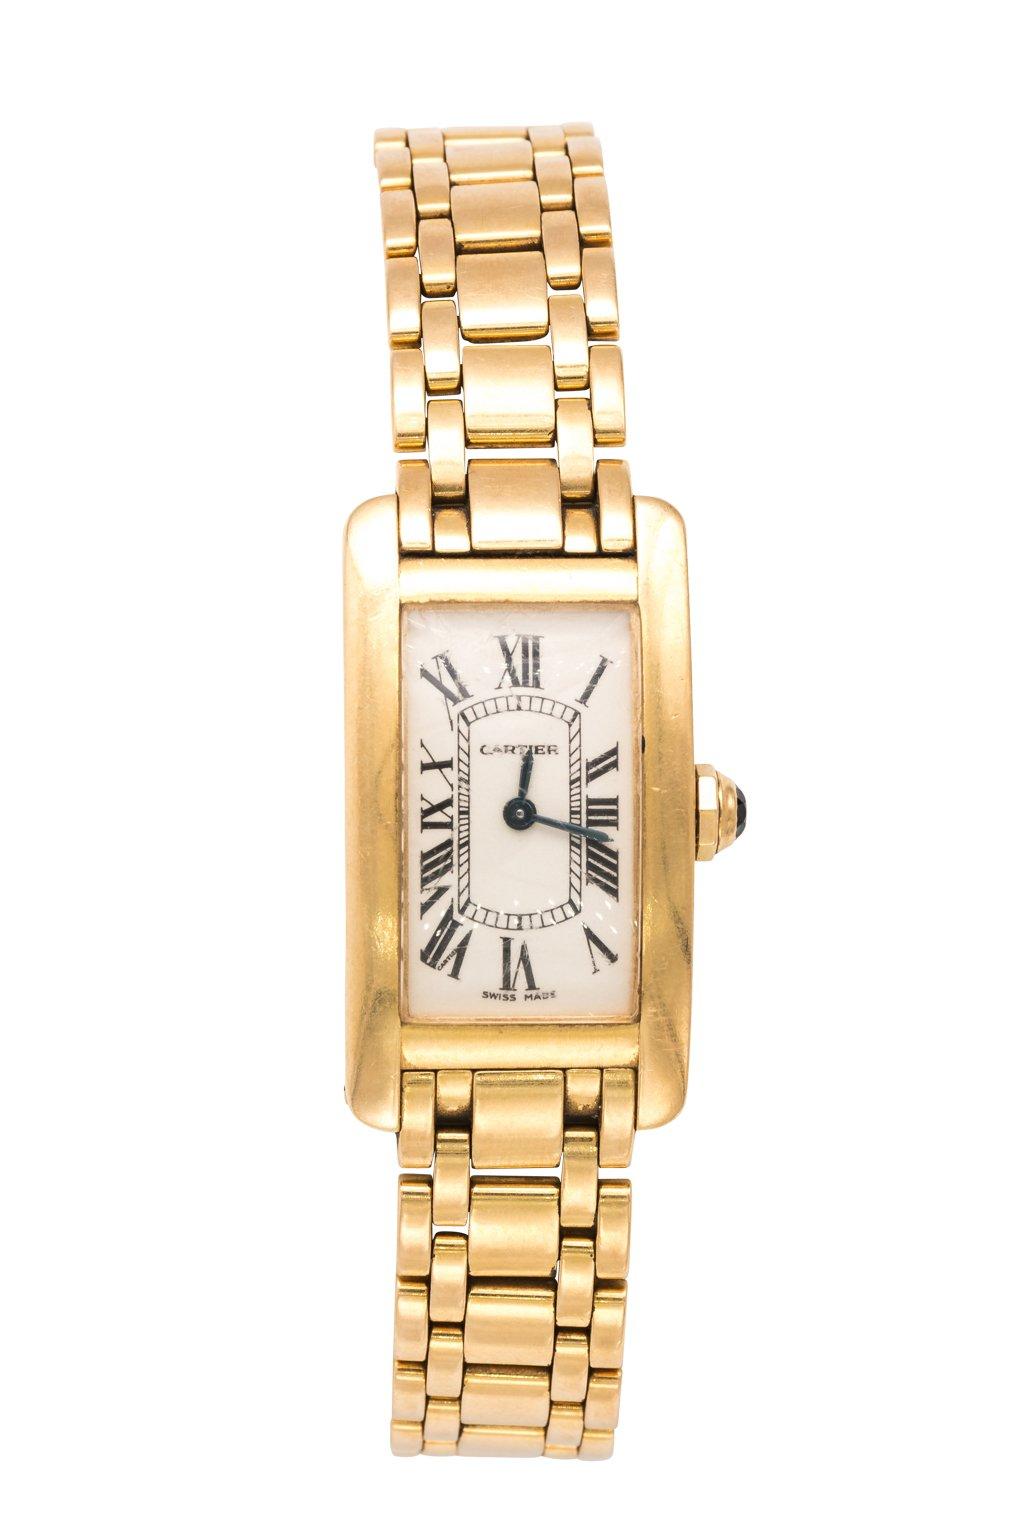 18 Carat Gold Cartier Tank Watch